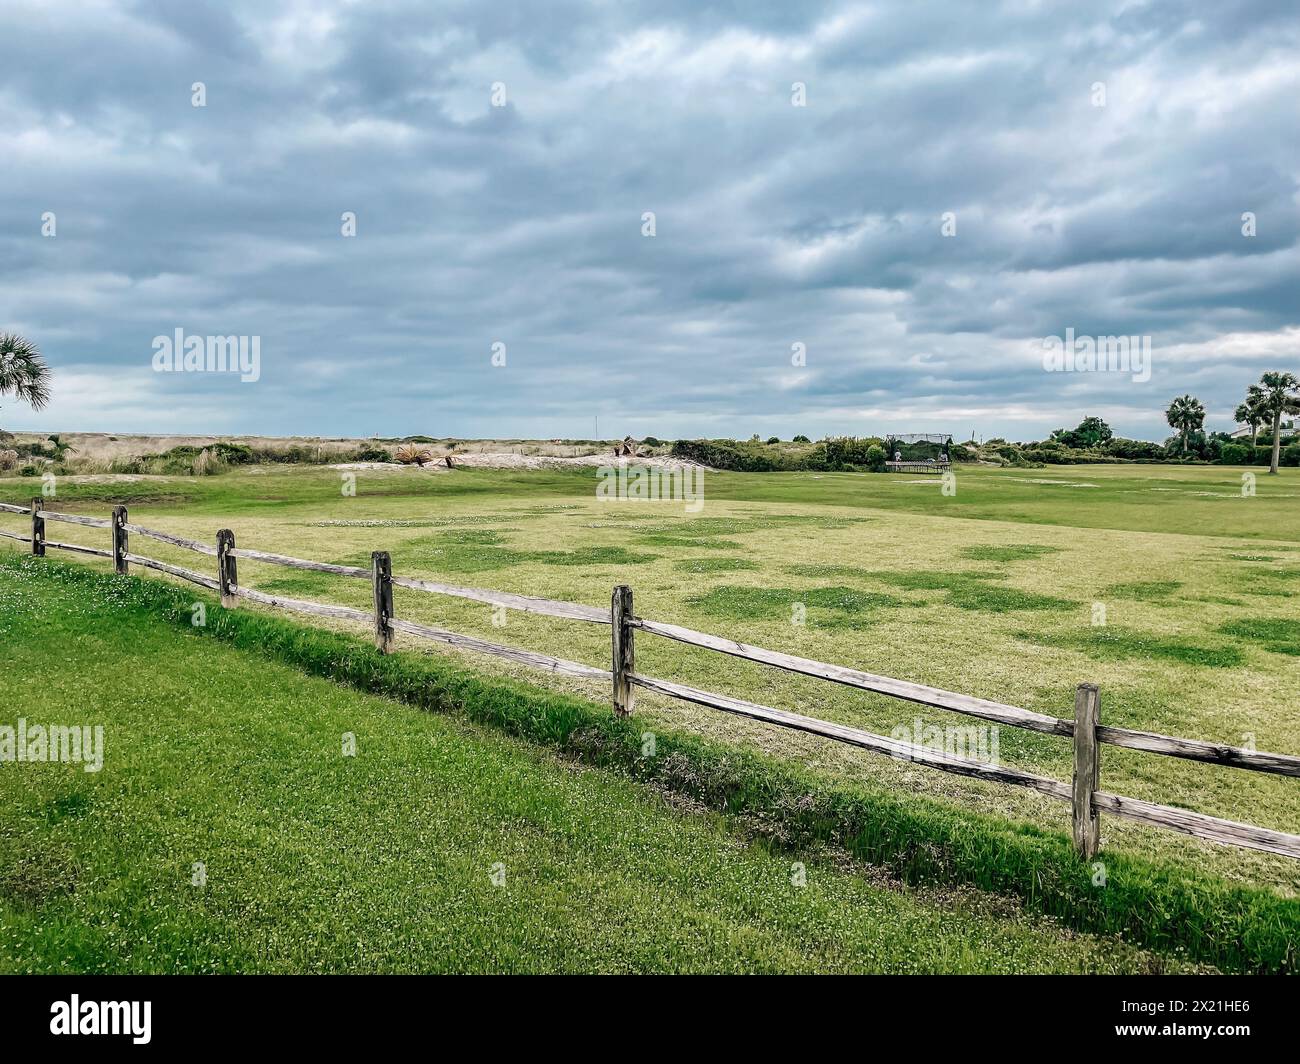 Vasto campo verde aperto con recinzione rustica in legno in una giornata nuvolosa Foto Stock